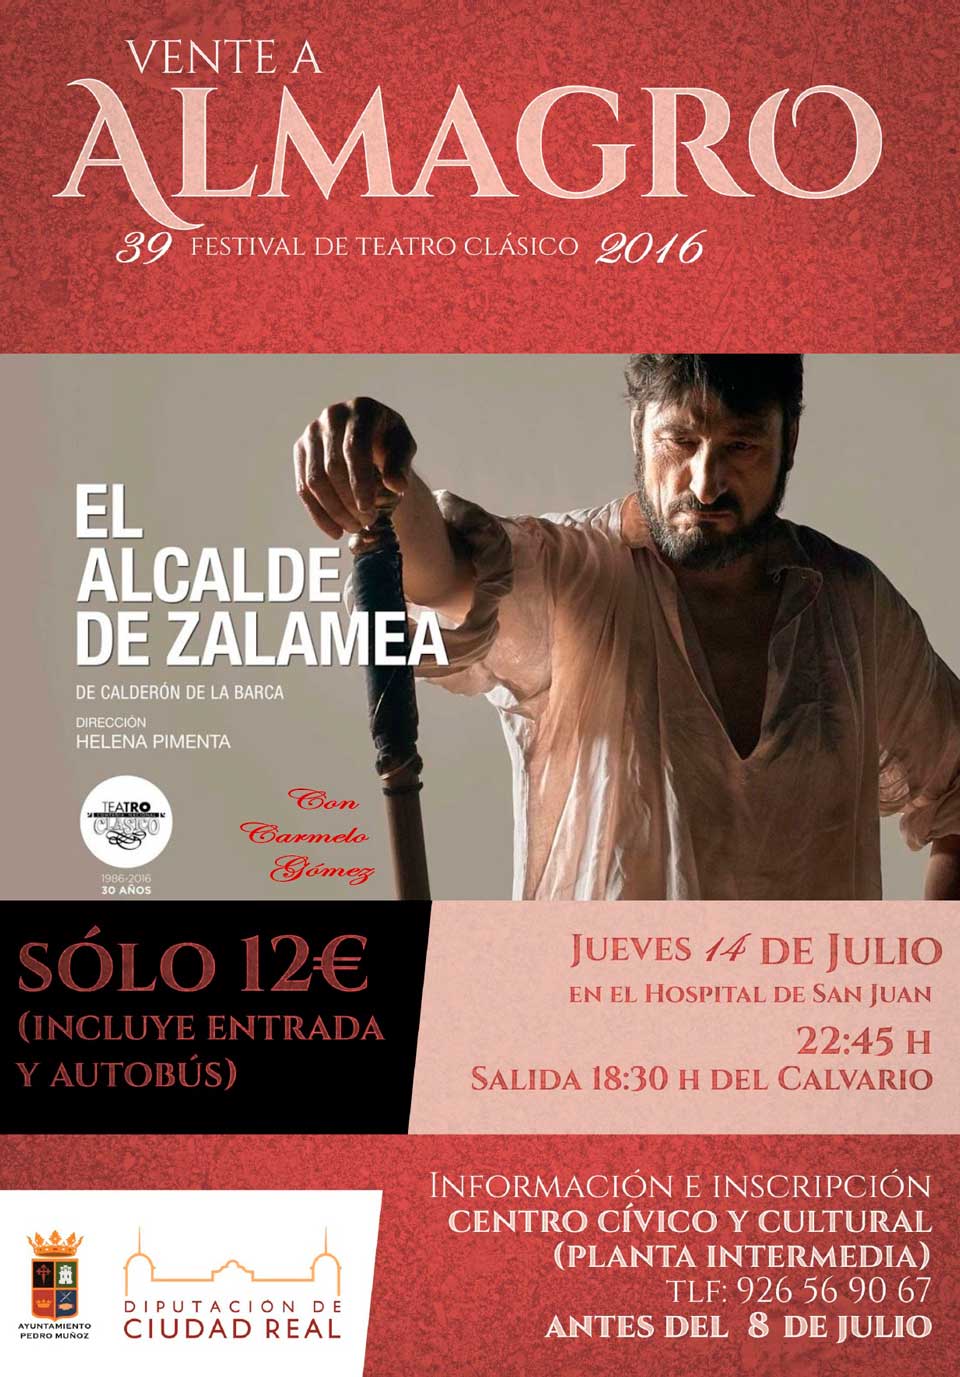 El jueves 14 de julio en Almagro, dentro de la trigésimo novena edición del Festival Internacional de Teatro Clásico